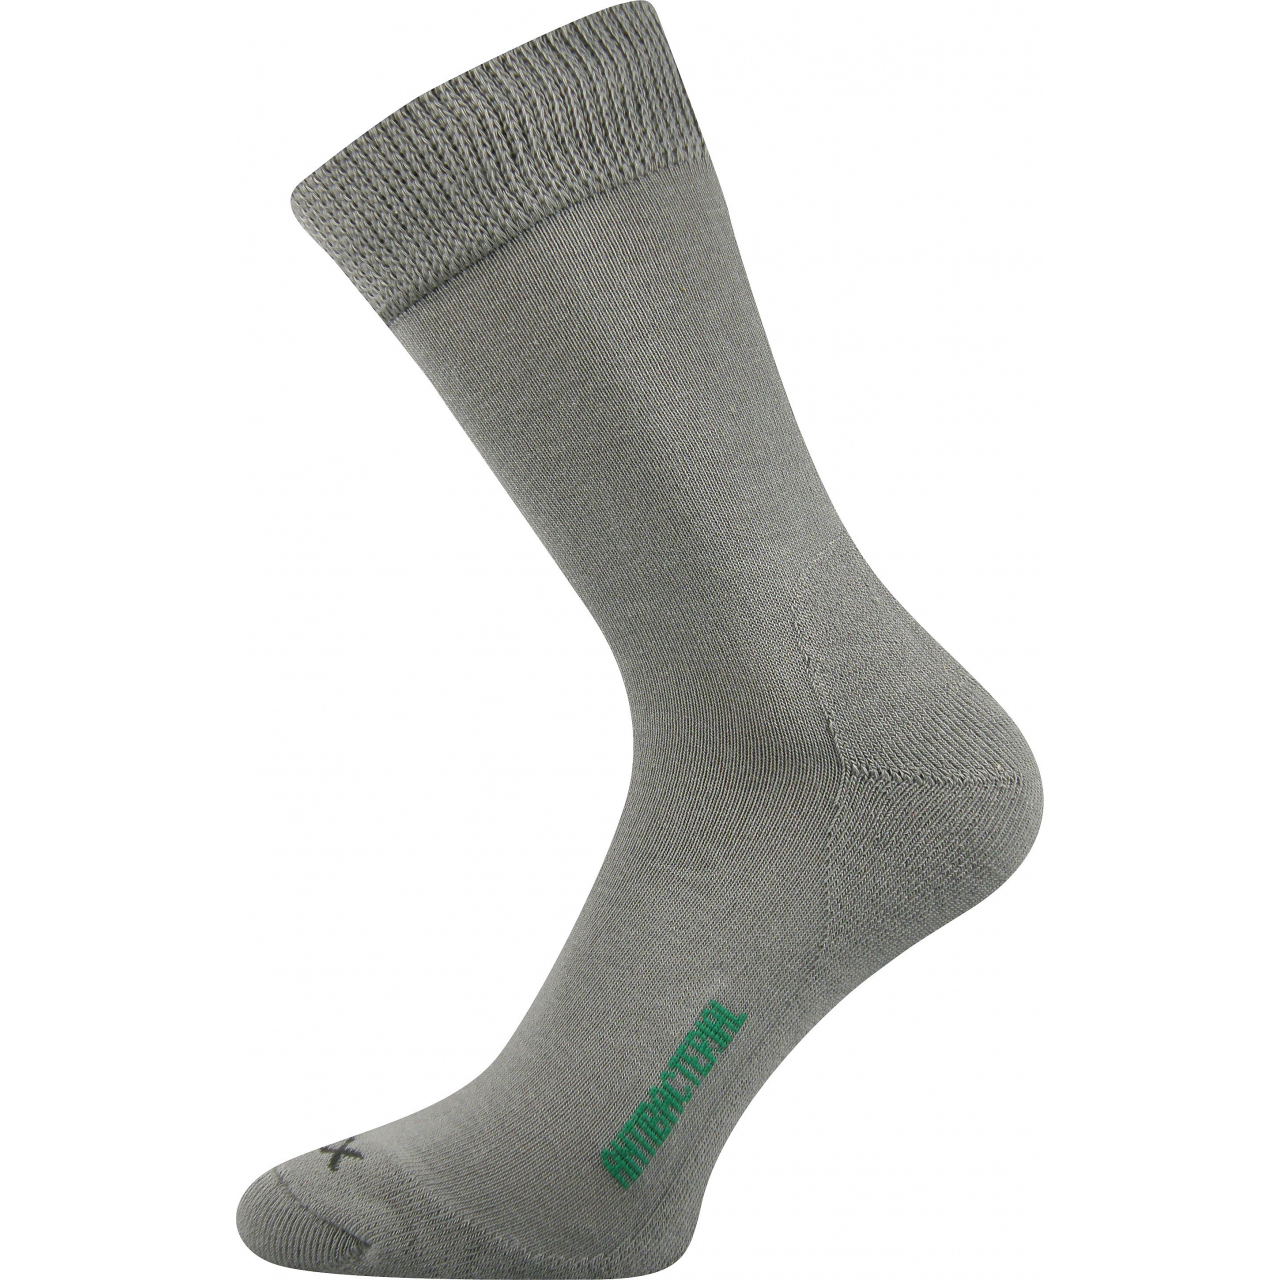 Ponožky zdravotní Voxx Zeus - světle šedé, 43-46